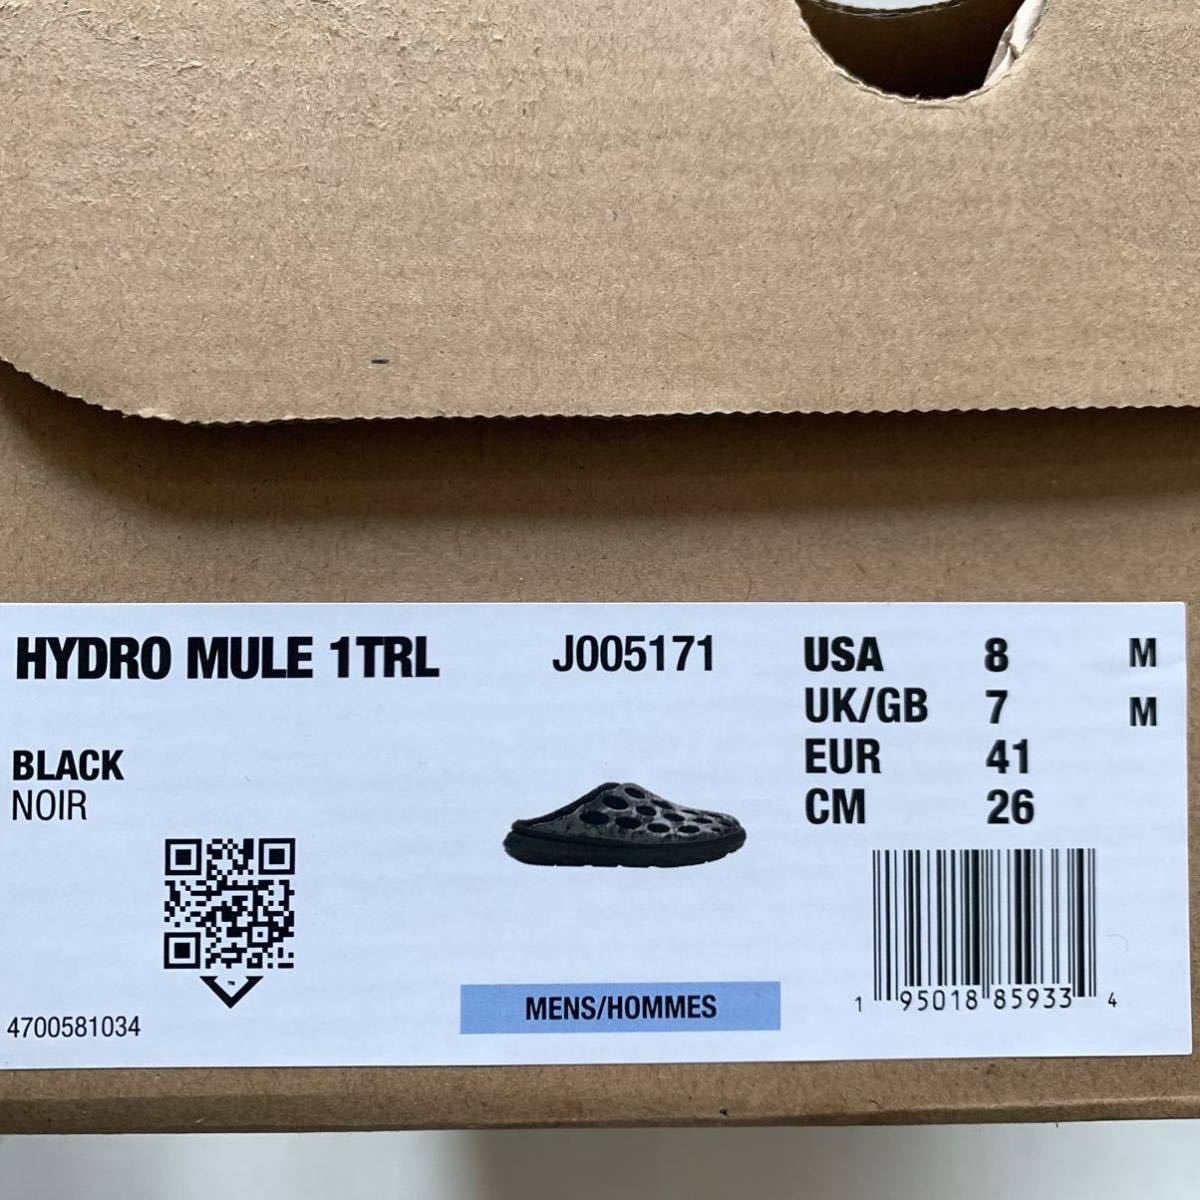  новый товар mereruMERRELL 1TRL HYDRO MULE гидро шлепанцы сандалии обувь 26. мужской чёрный черный ограничение бесплатная доставка 